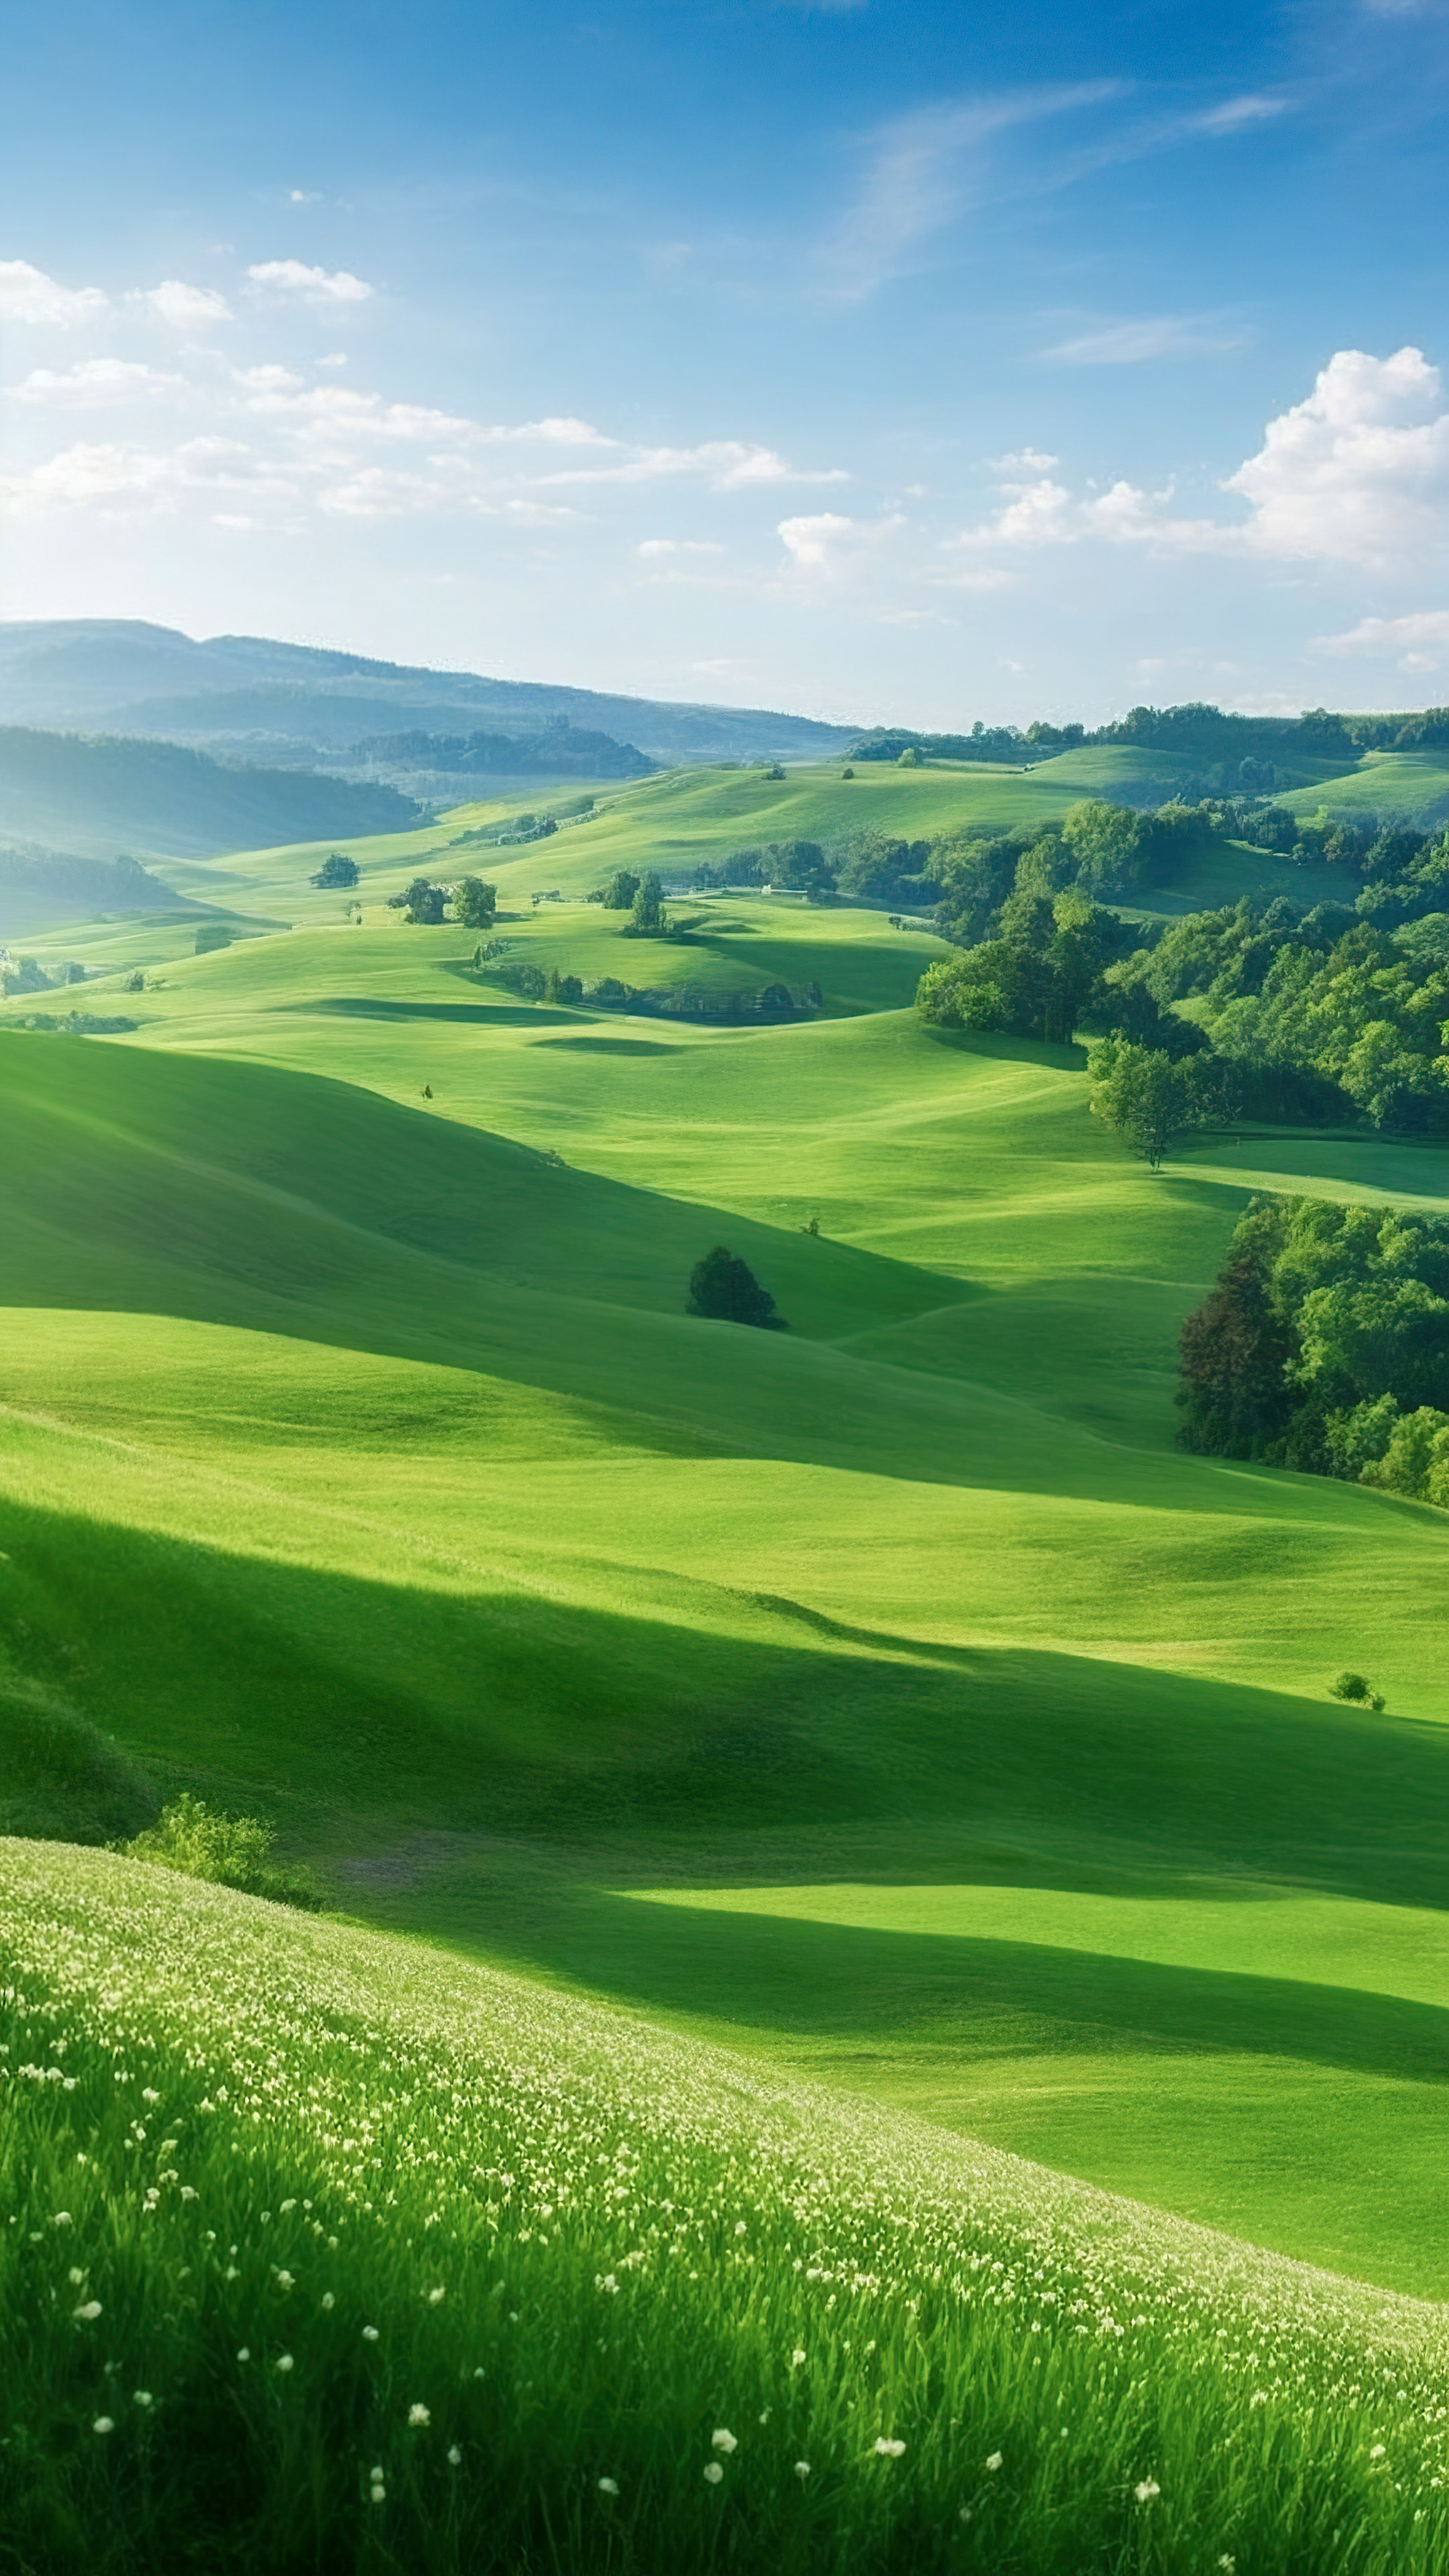 Faites l'expérience de la tranquillité avec notre joli fond d'écran nature, représentant une scène paisible de la campagne avec des collines ondulantes, des pâturages verts et un ciel clair. 